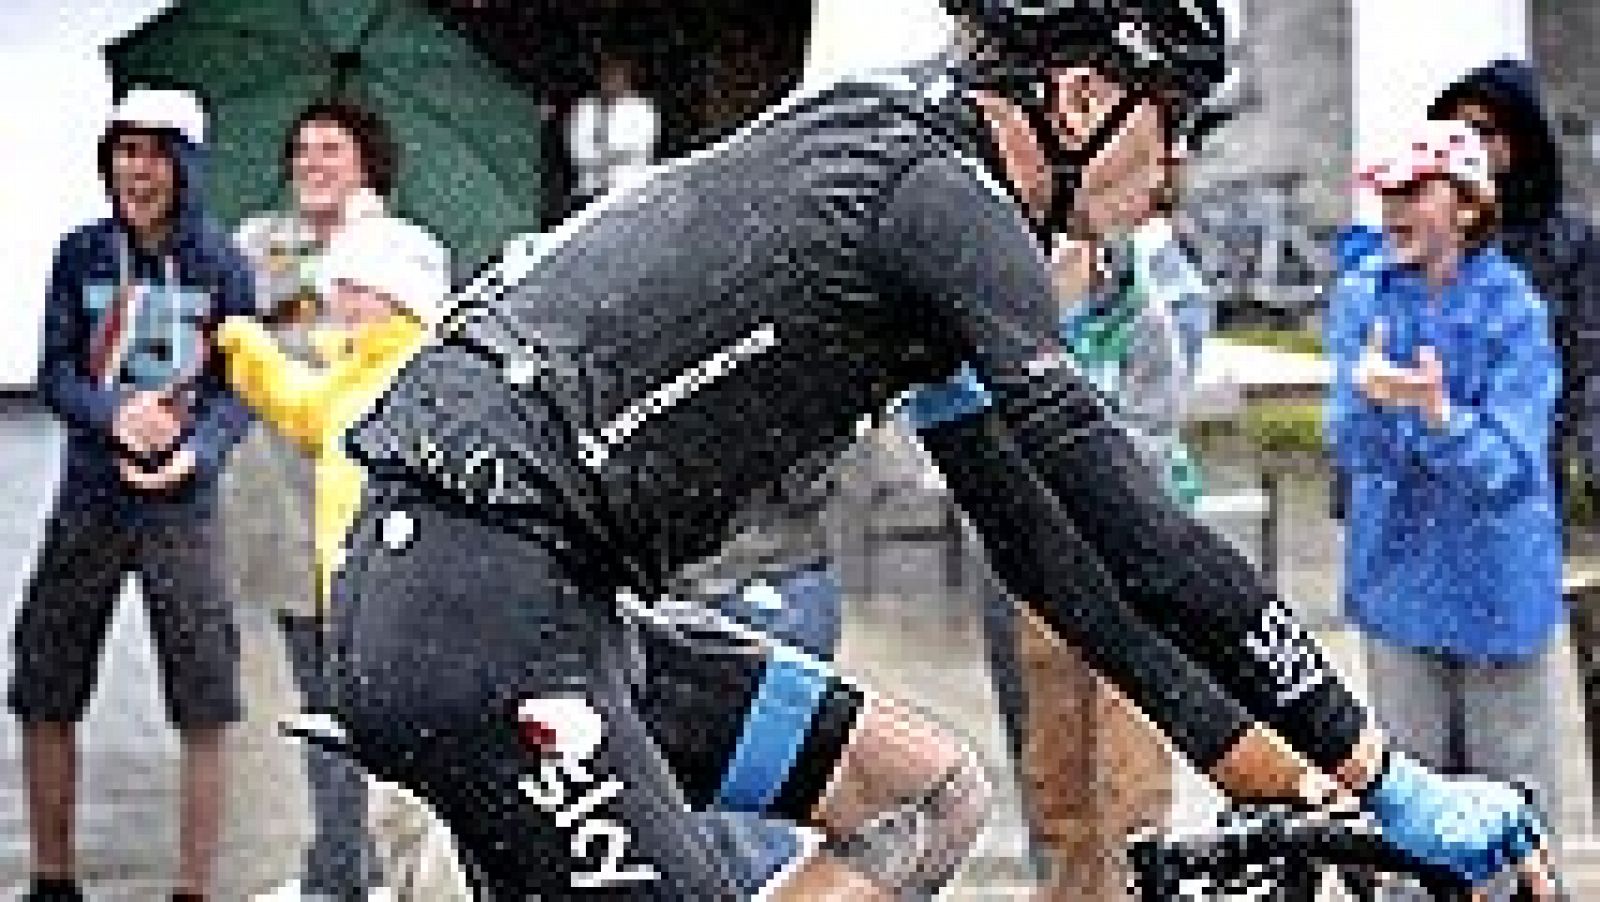 El británico Chris Froome, ganador del Tour 2013, abandonó hoy la ronda francesa tras sufrir una segunda caída en la quinta etapa, la tercera en dos días.   El ciclista del Sky, visiblemente afectado, subió al coche del Sky después de haber caído a f